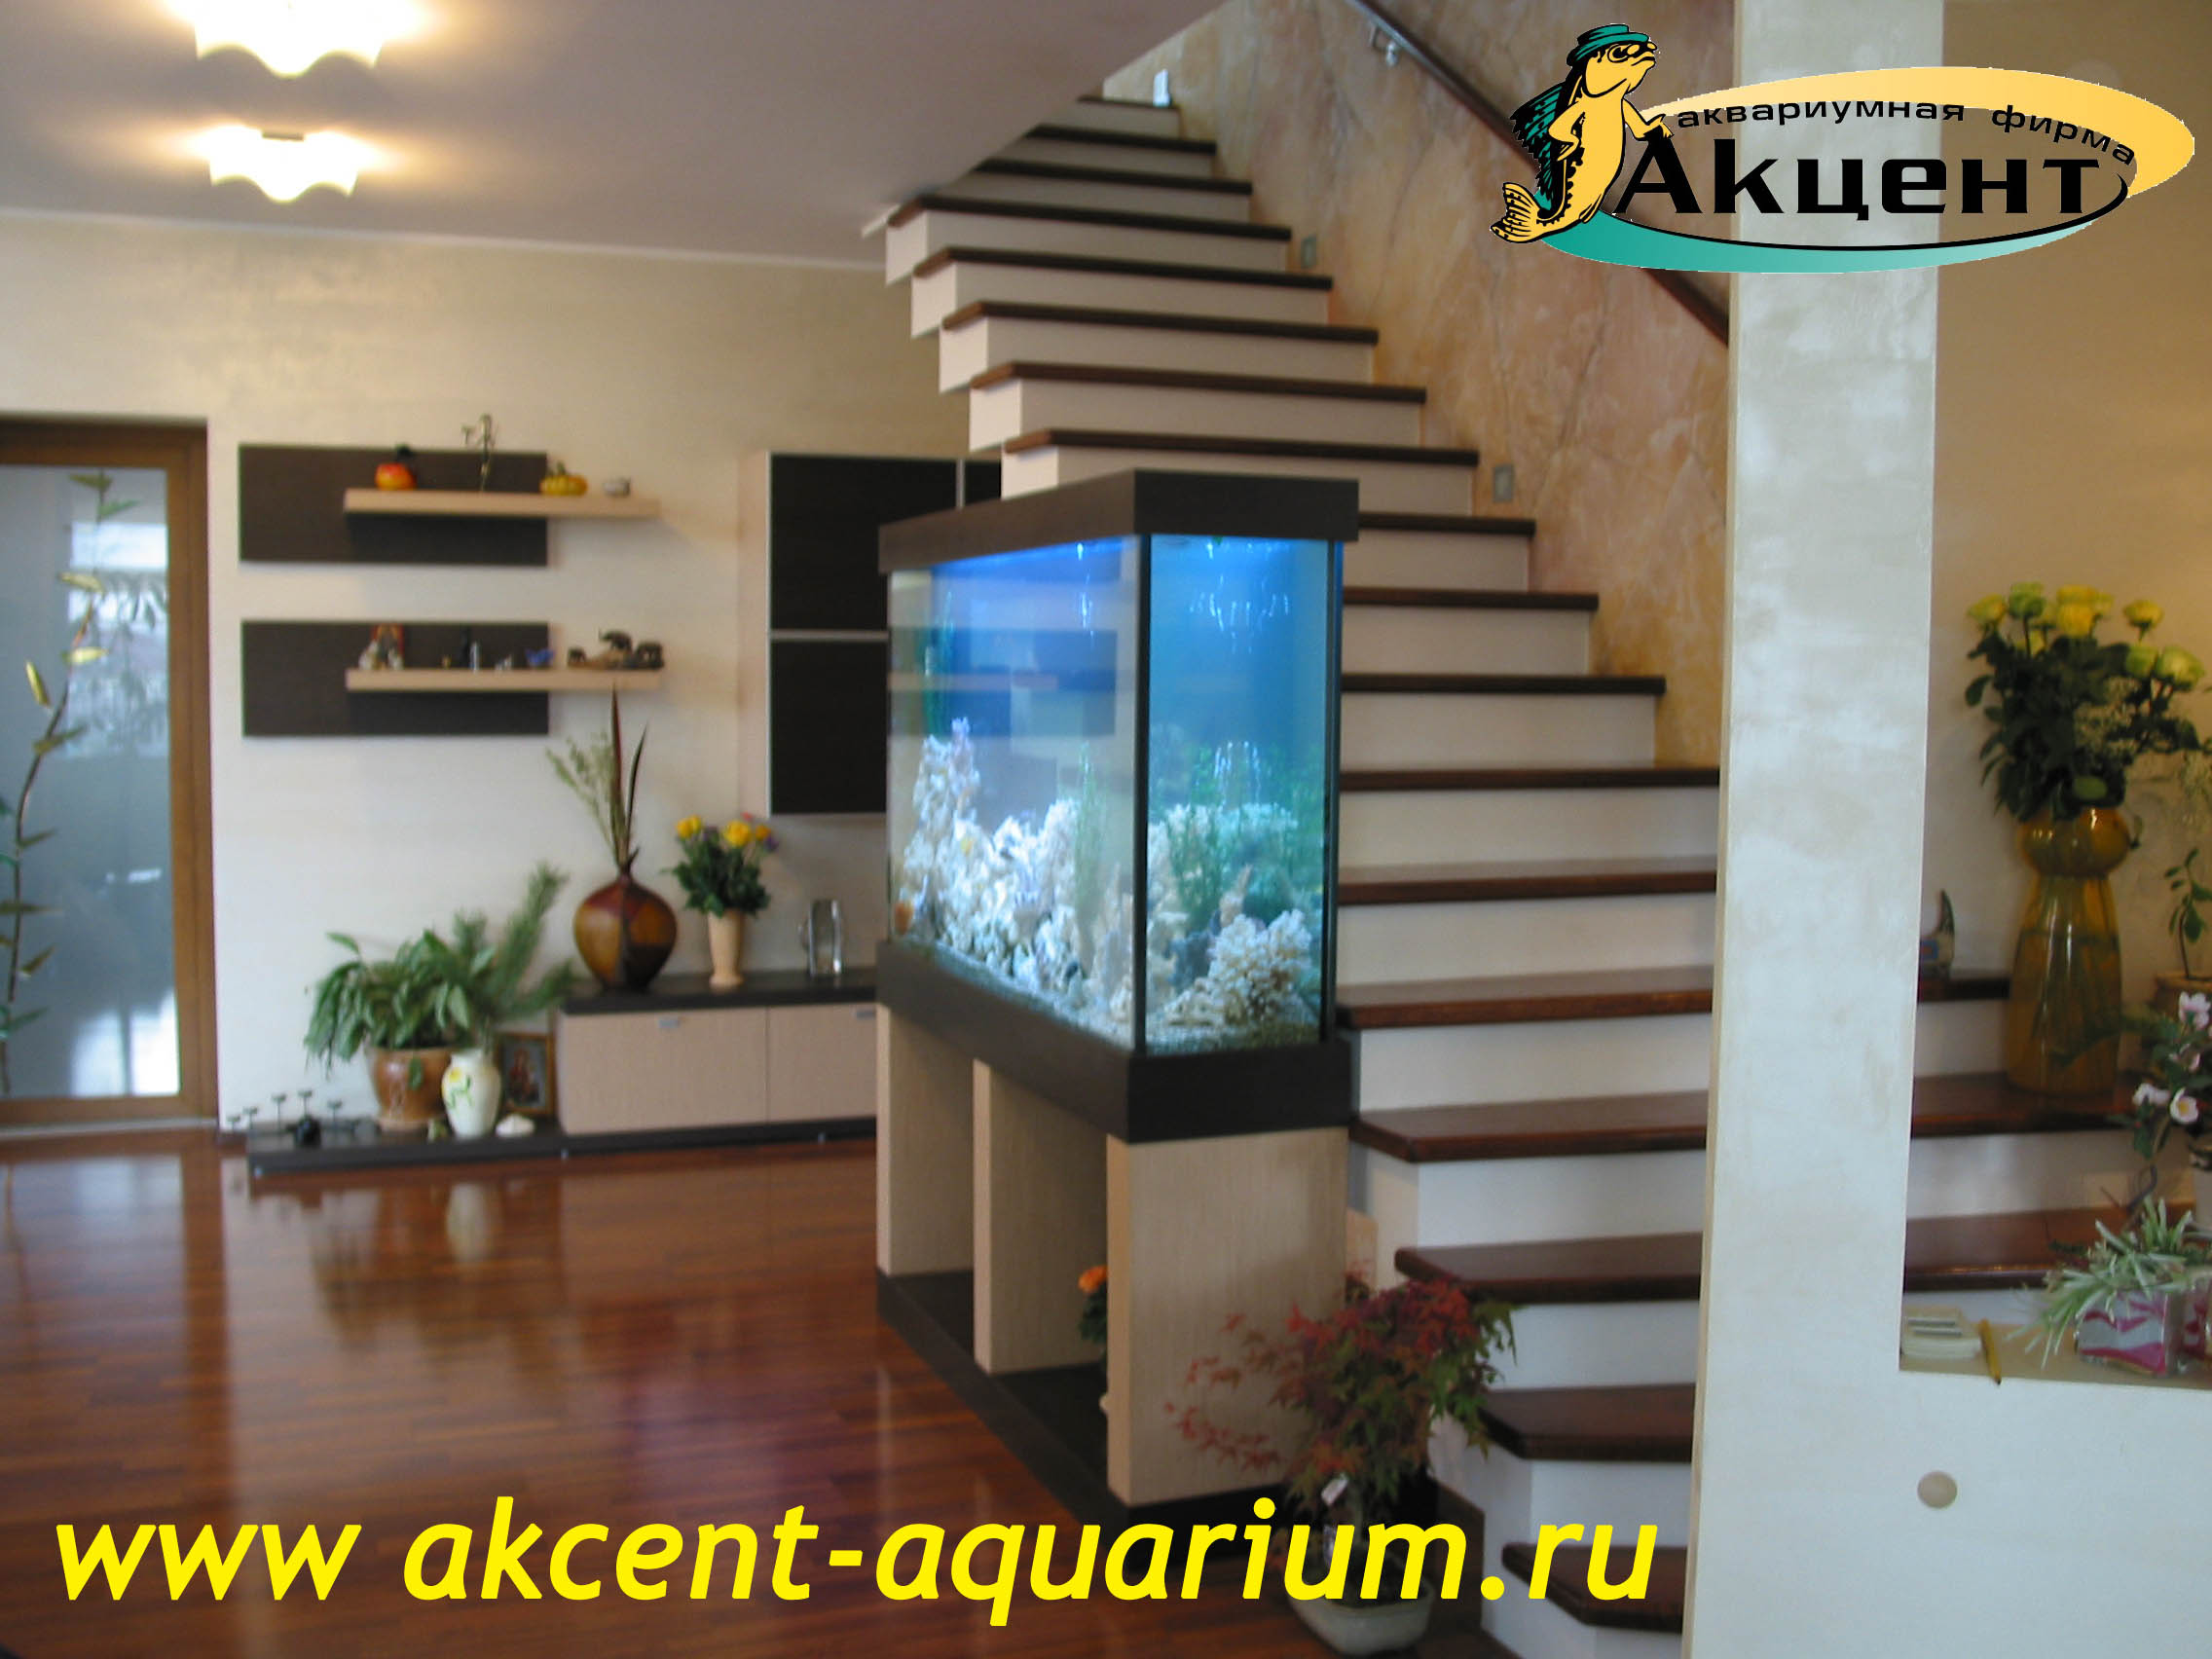 Акцент-аквариум, аквариум просмотровый 600 литров